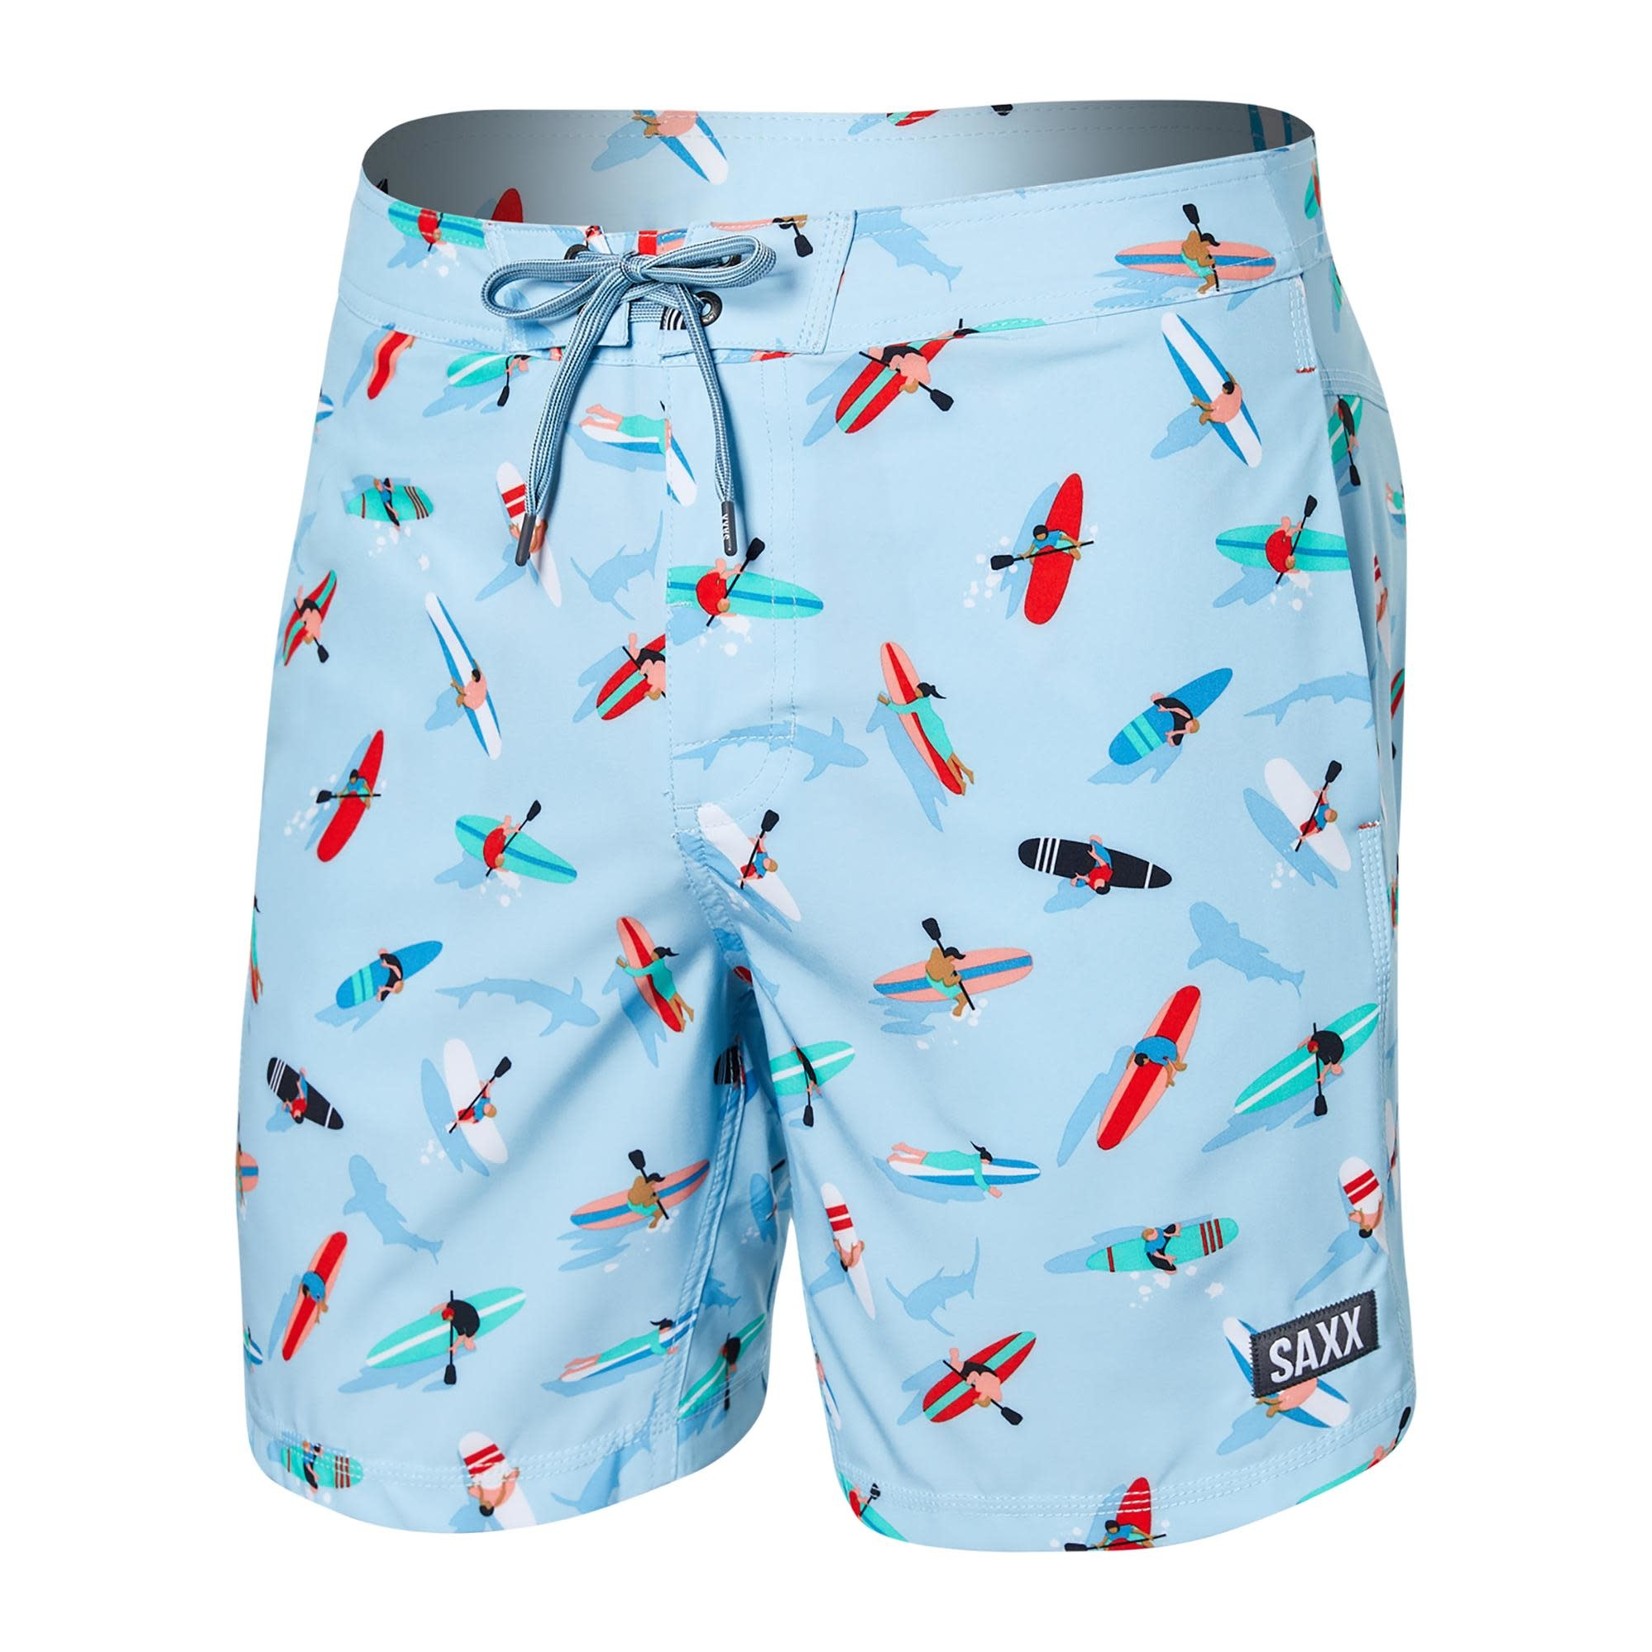 SAXX BETAWAVE Boardshort Swim Shorts 7" / Paddlers- Blue